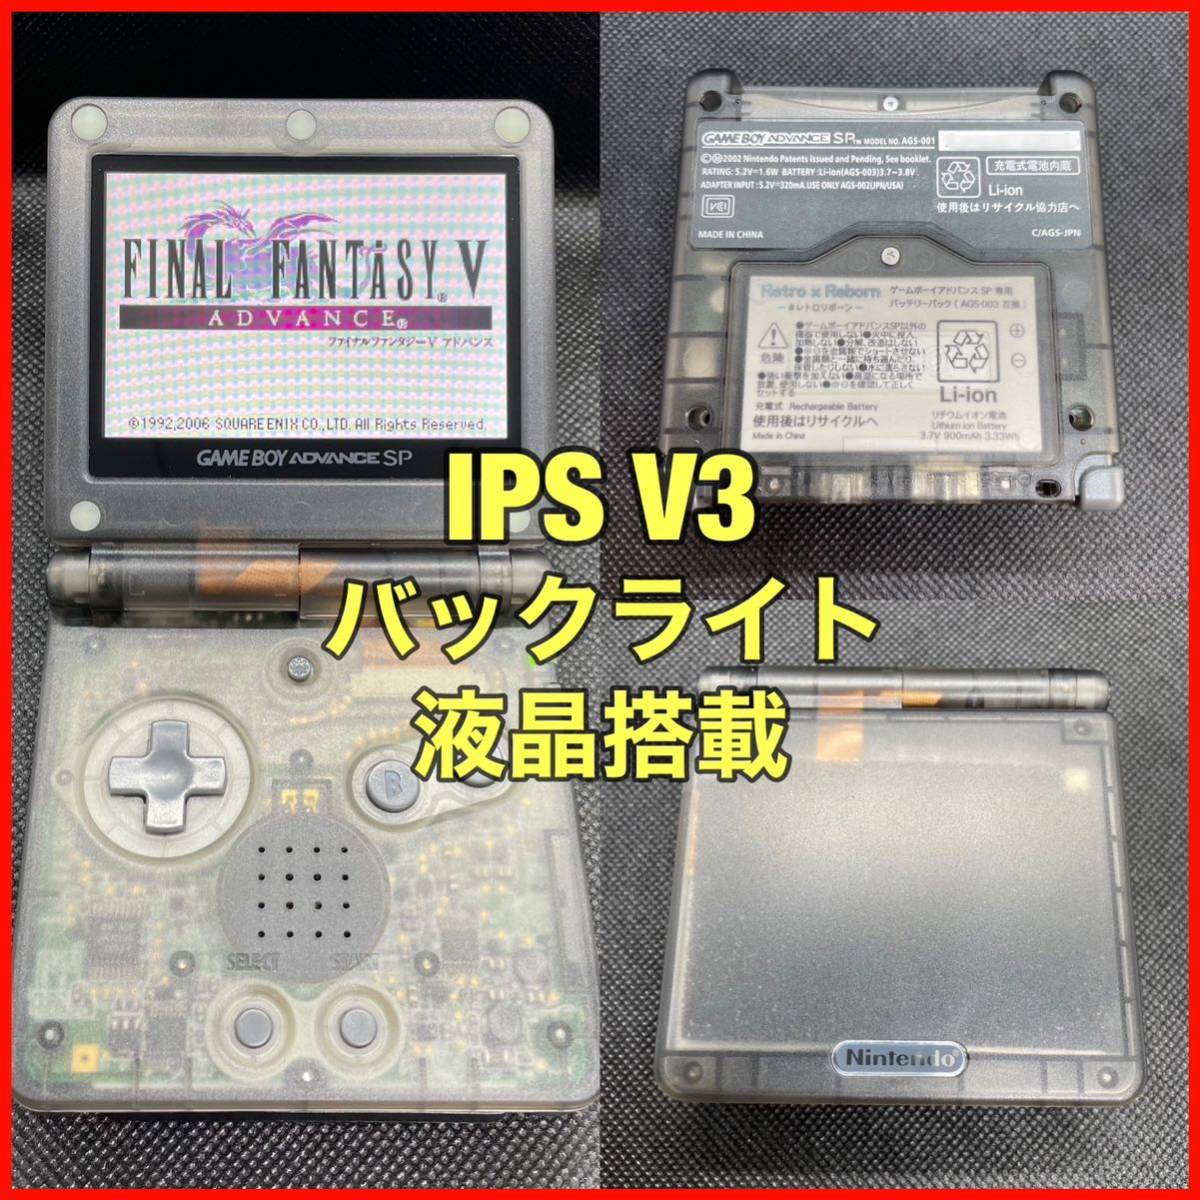 ゲームボーイアドバンス SP 本体 IPS V3 バックライト液晶搭載 009